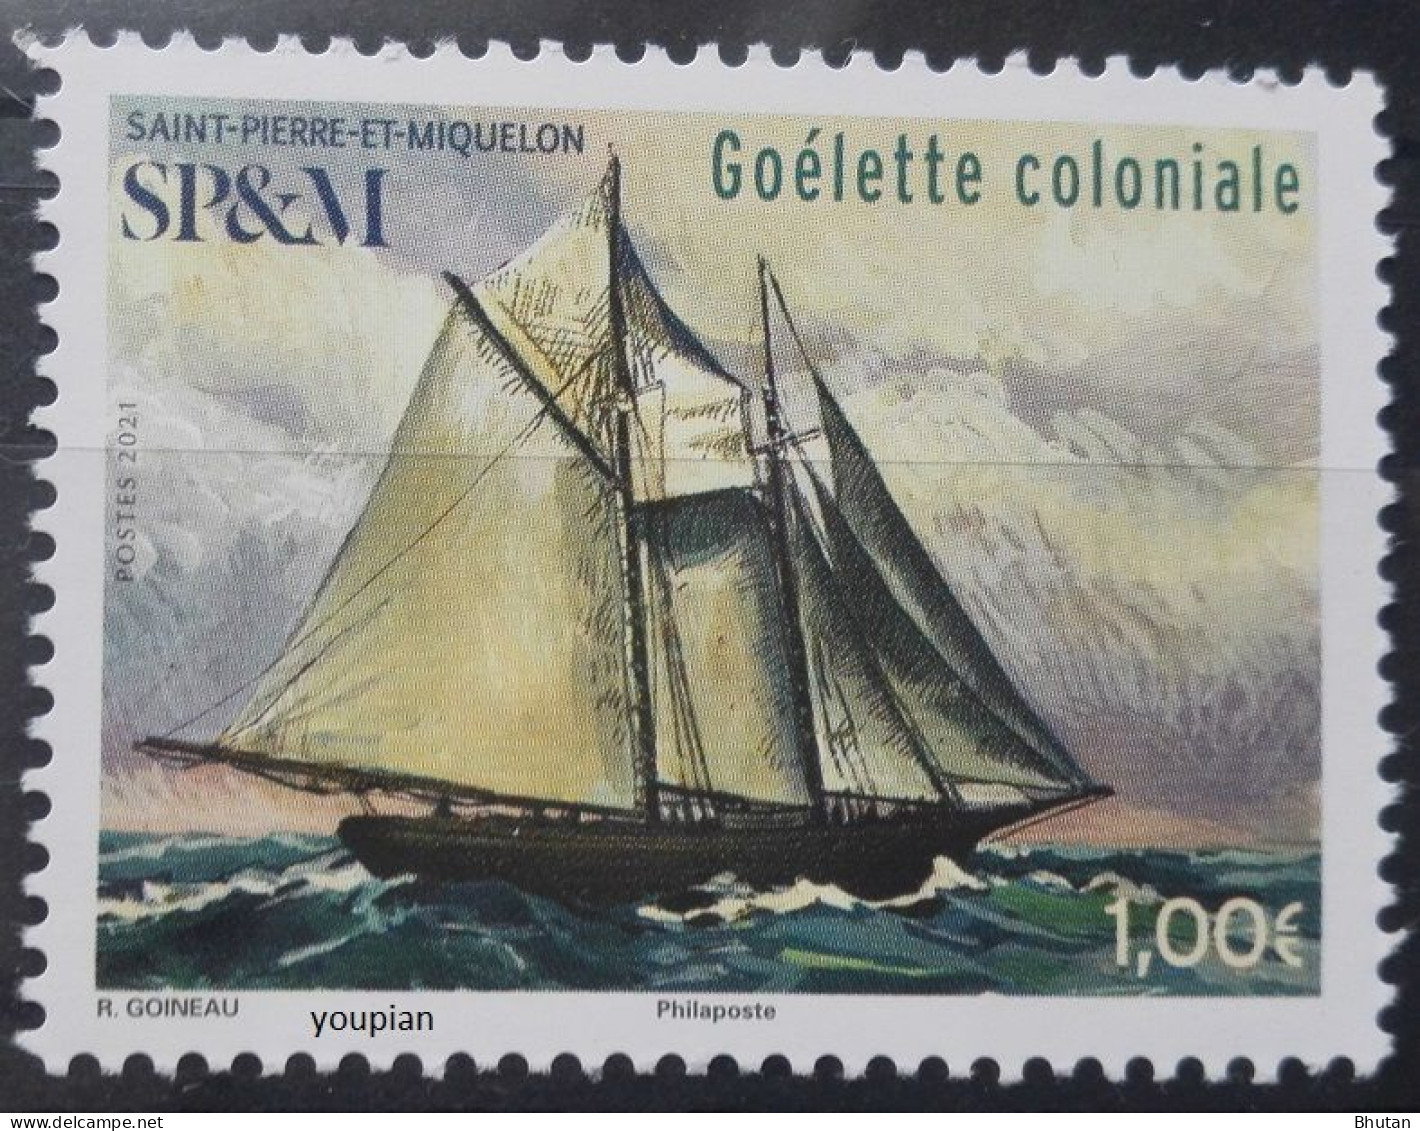 St. Pierre And Miquelon 2021, Goélette Coloniale Ship, MNH Single Stamp - Neufs